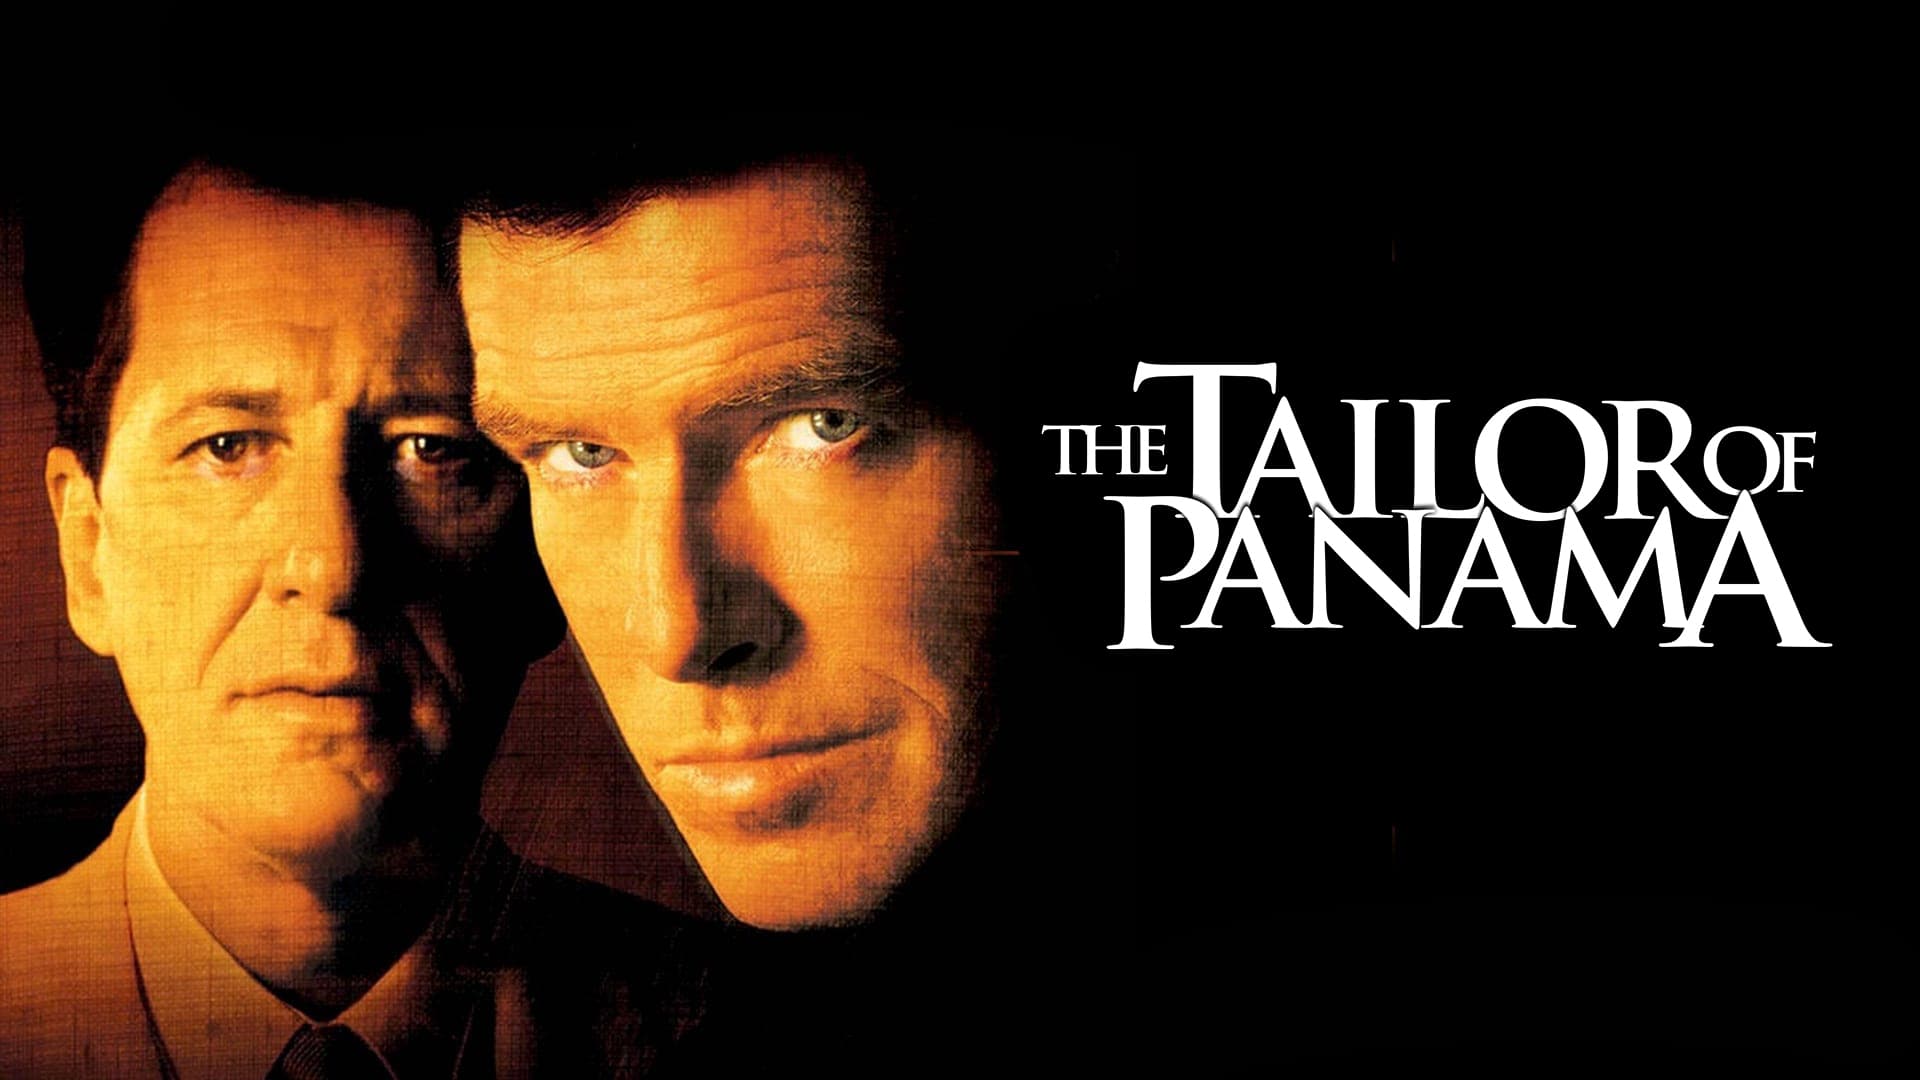 Il sarto di Panama (2001)